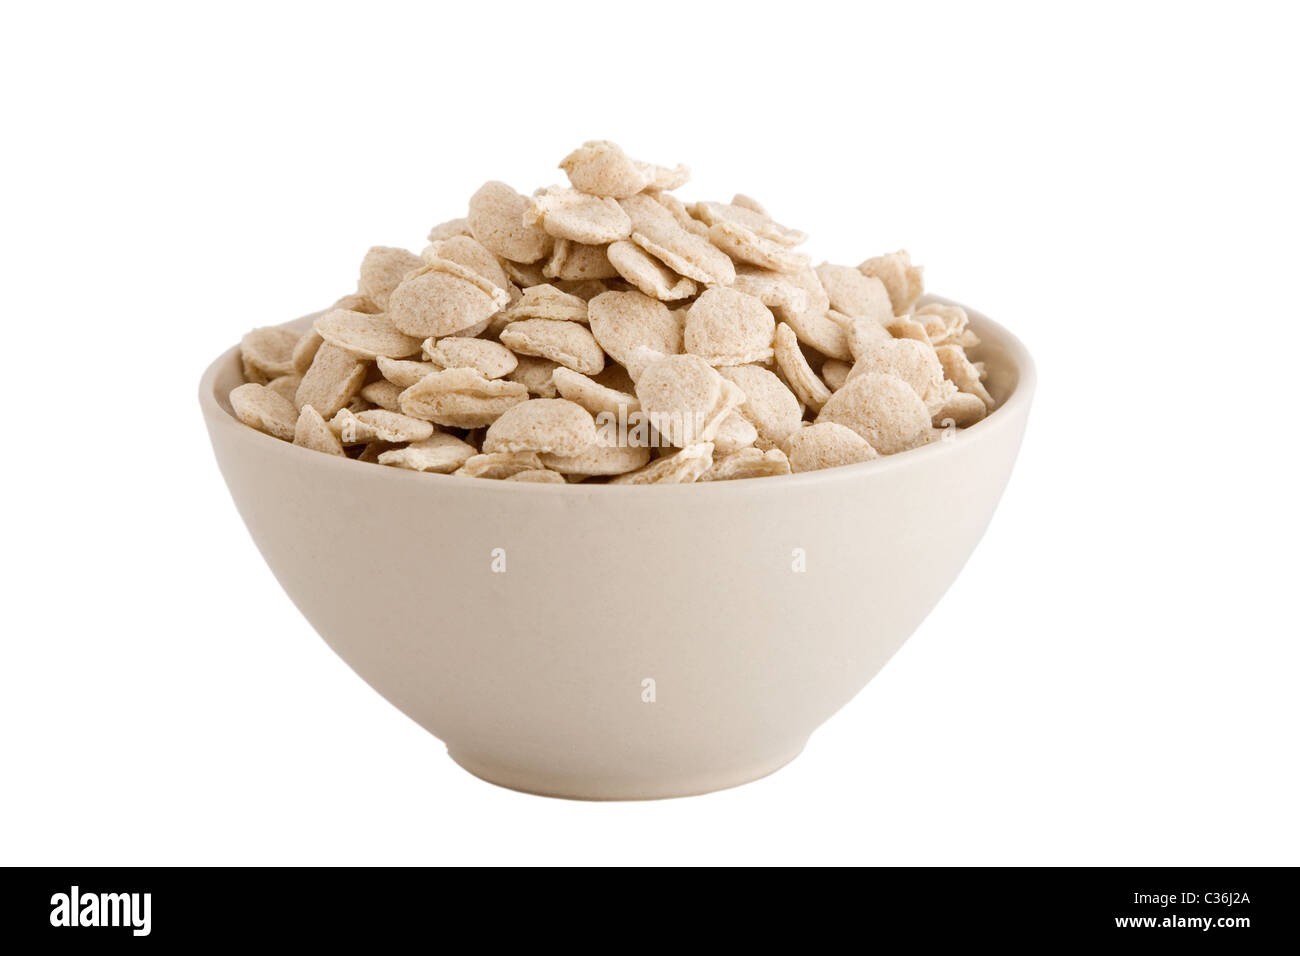 Vista frontale della vaschetta dei cereali su sfondo bianco Foto Stock